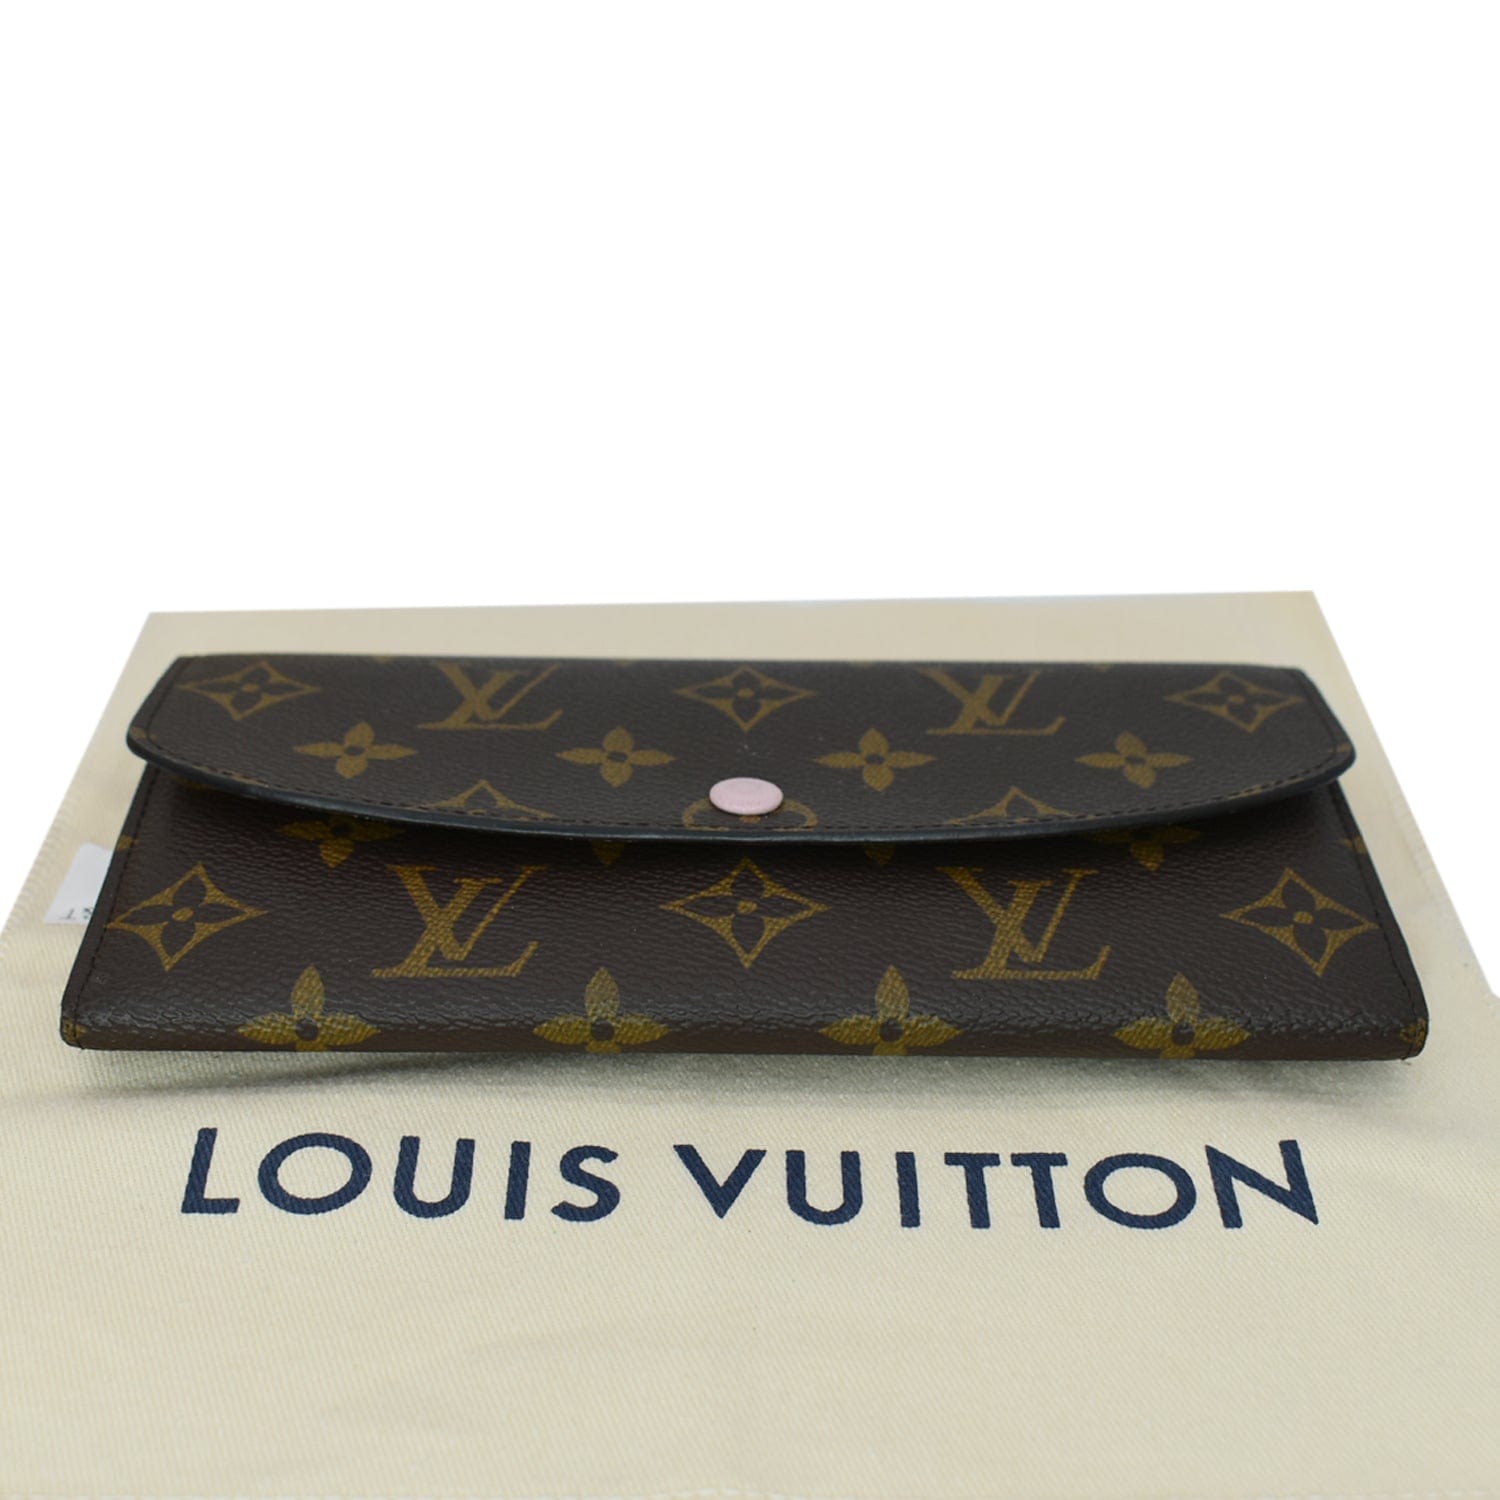 Louis Vuitton - Emilie Wallet - Rose Ballerine - Women - Luxury